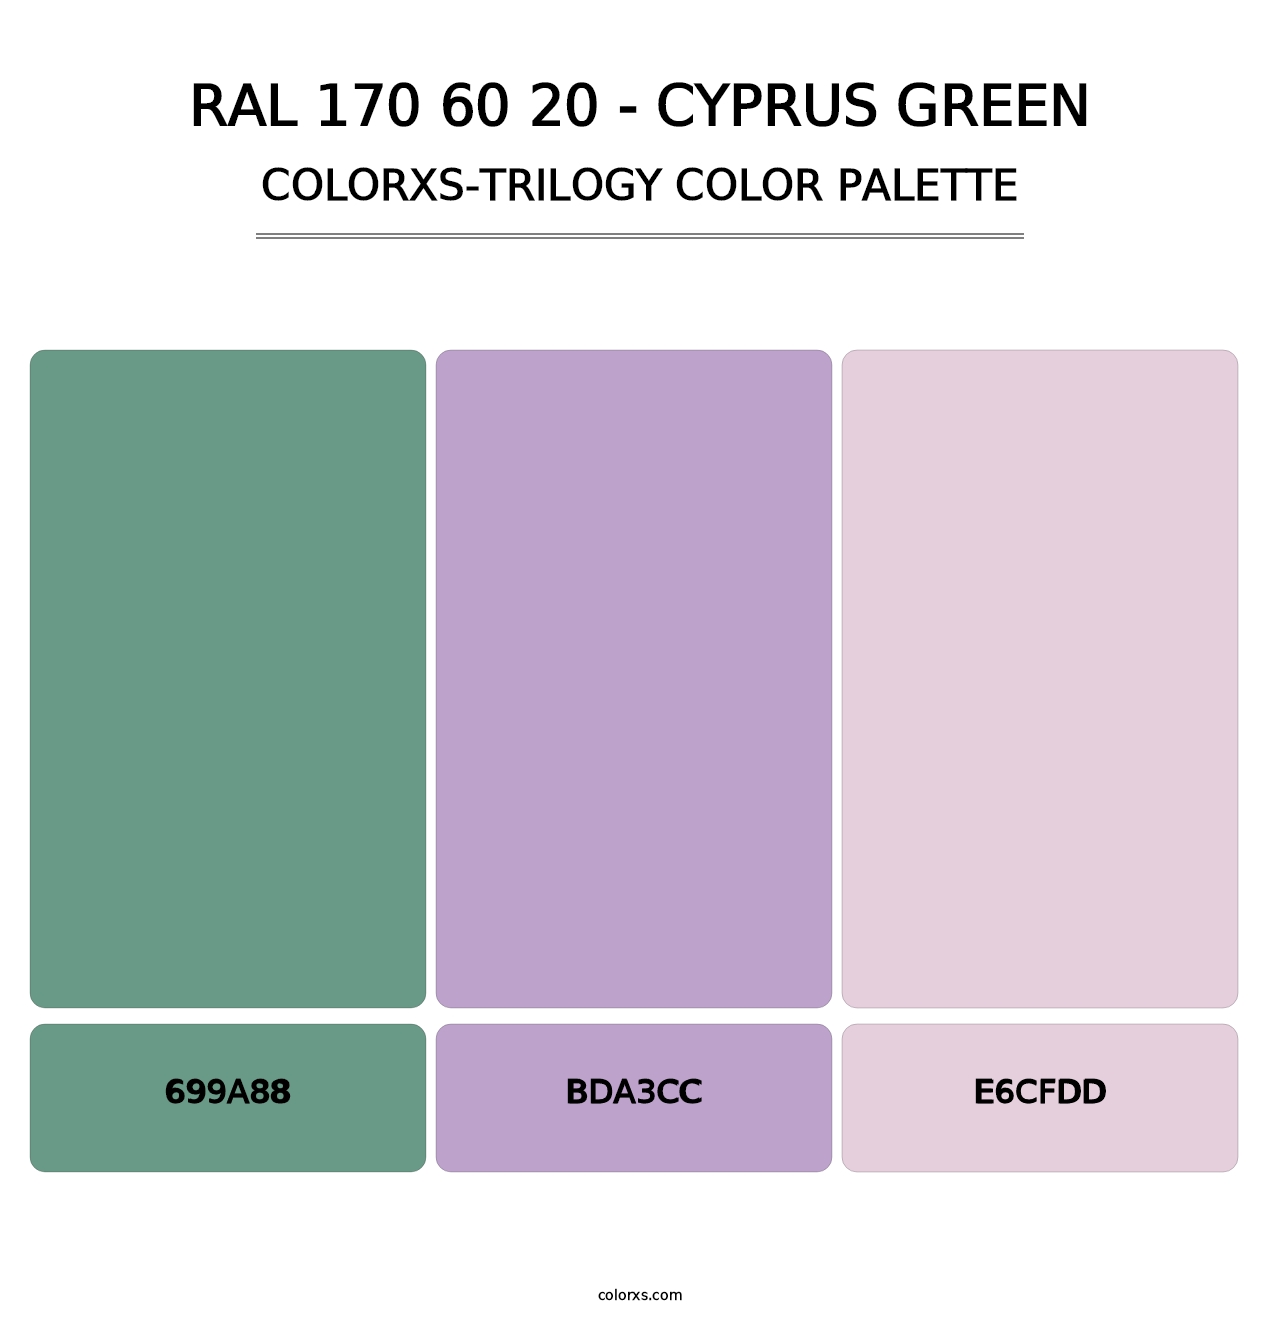 RAL 170 60 20 - Cyprus Green - Colorxs Trilogy Palette